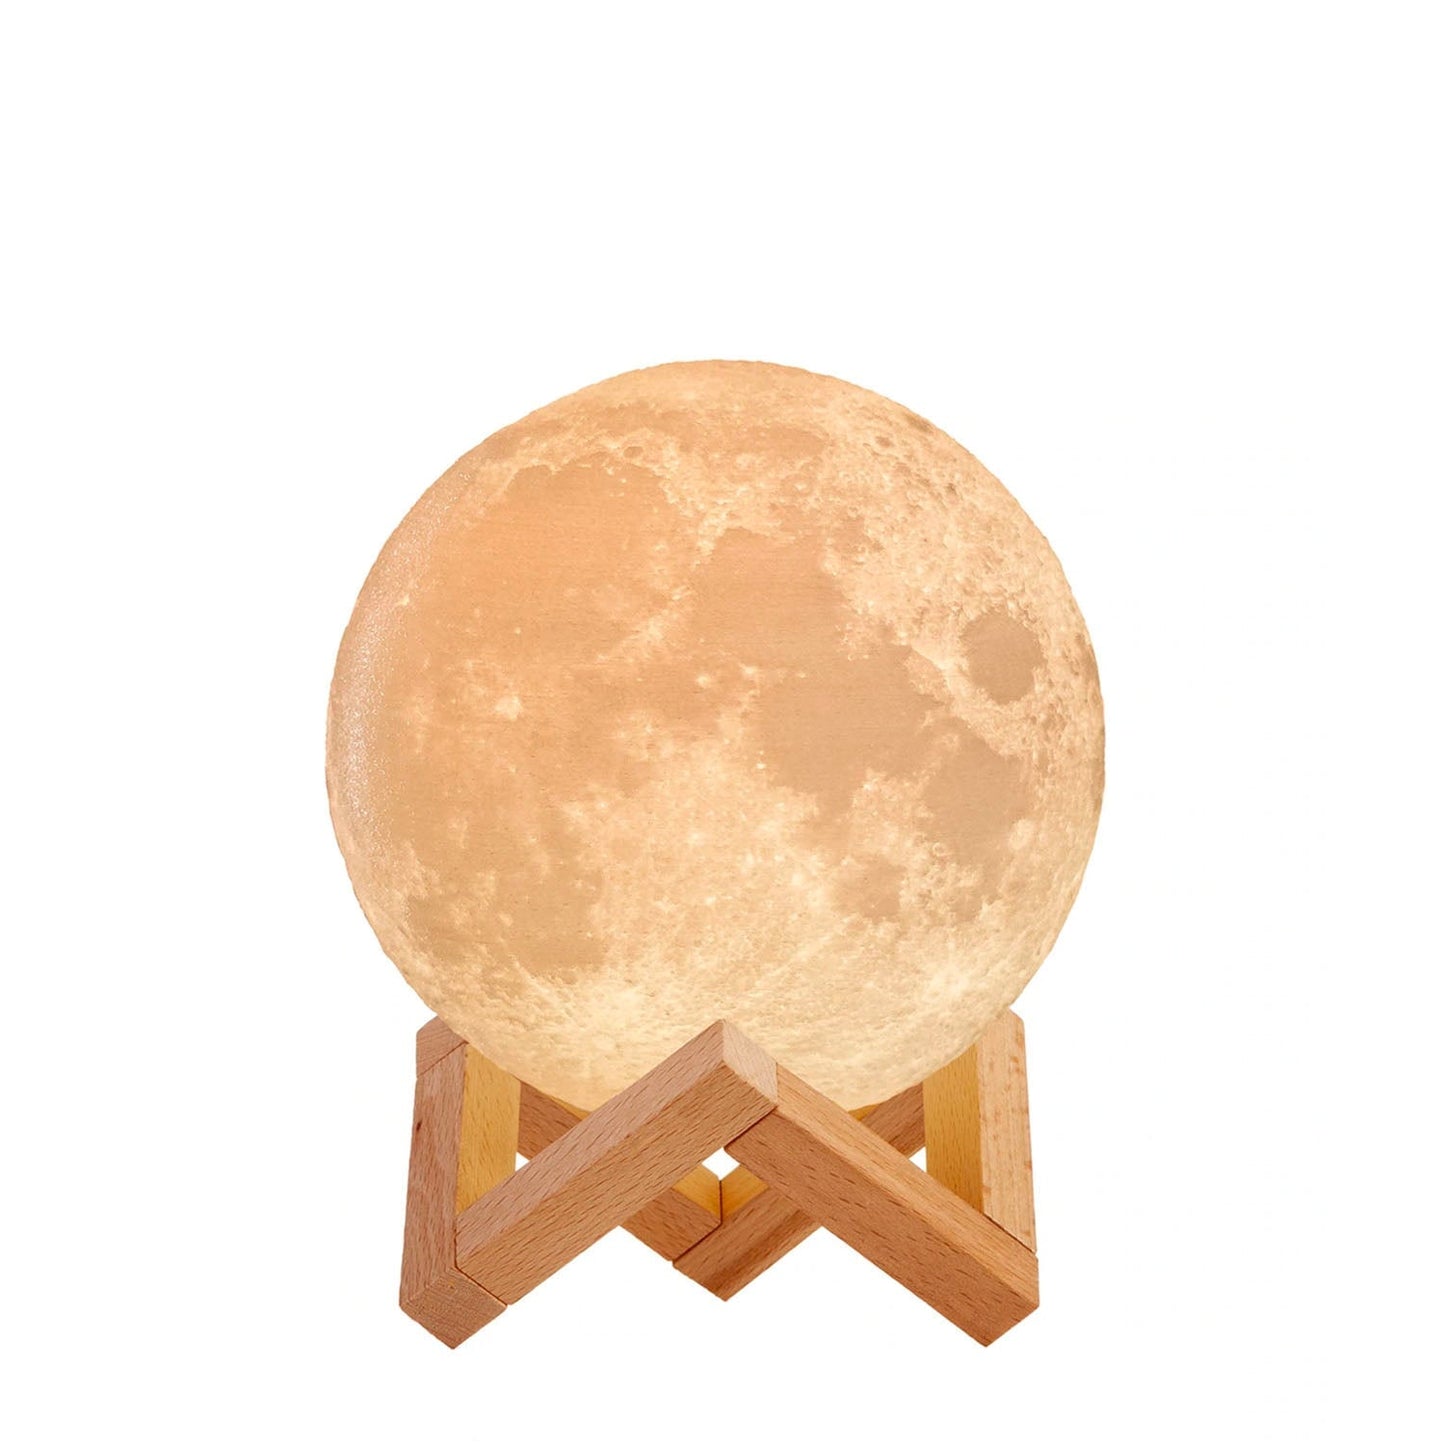 Moon Lamp Decor Latest Aesthetics Mini Moon – 4.7 inch 